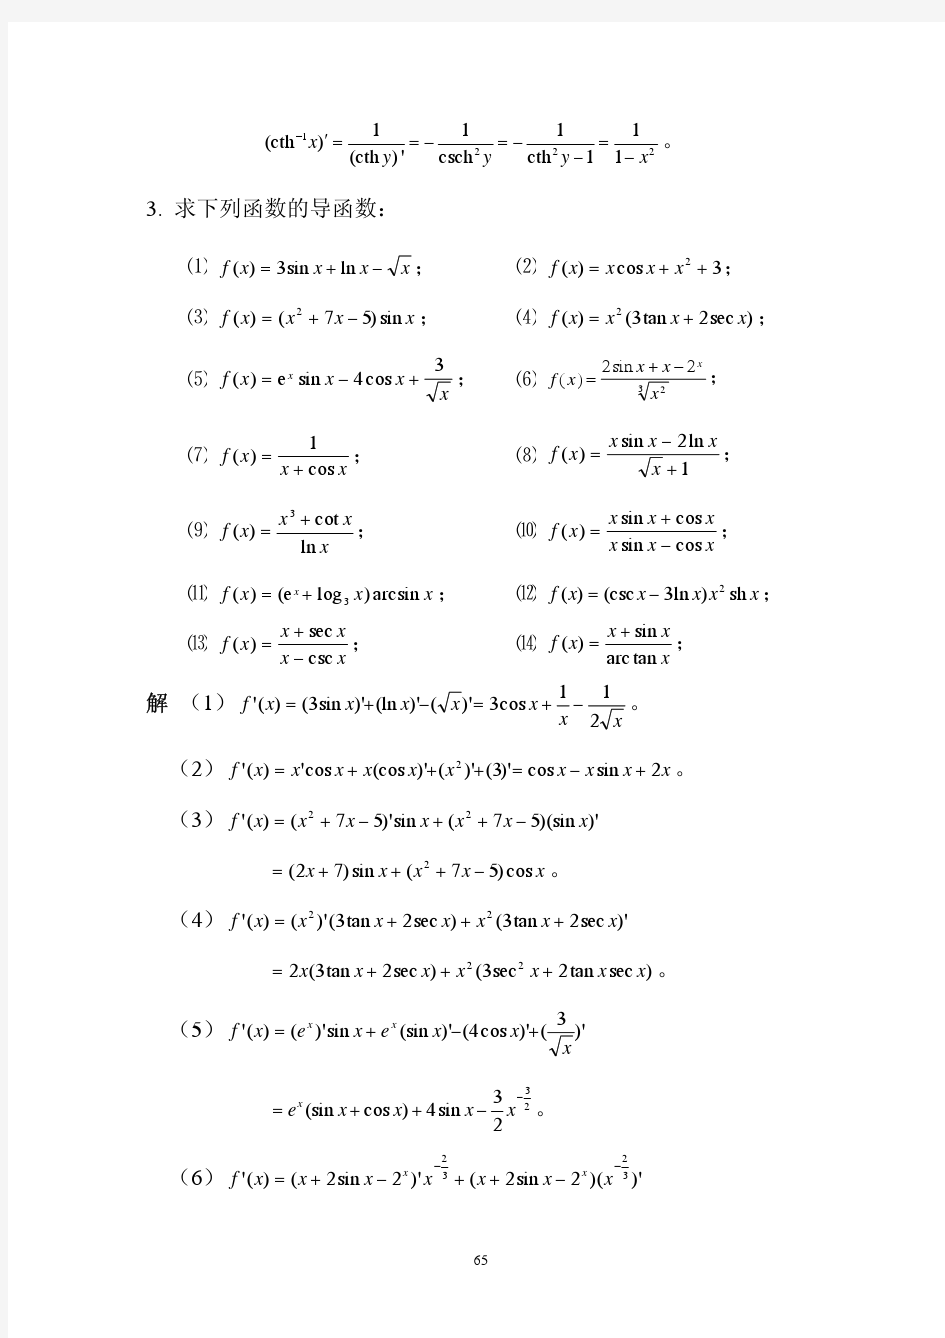 复旦大学数学系陈纪修《数学分析》(第二版)习题答案ex4-3